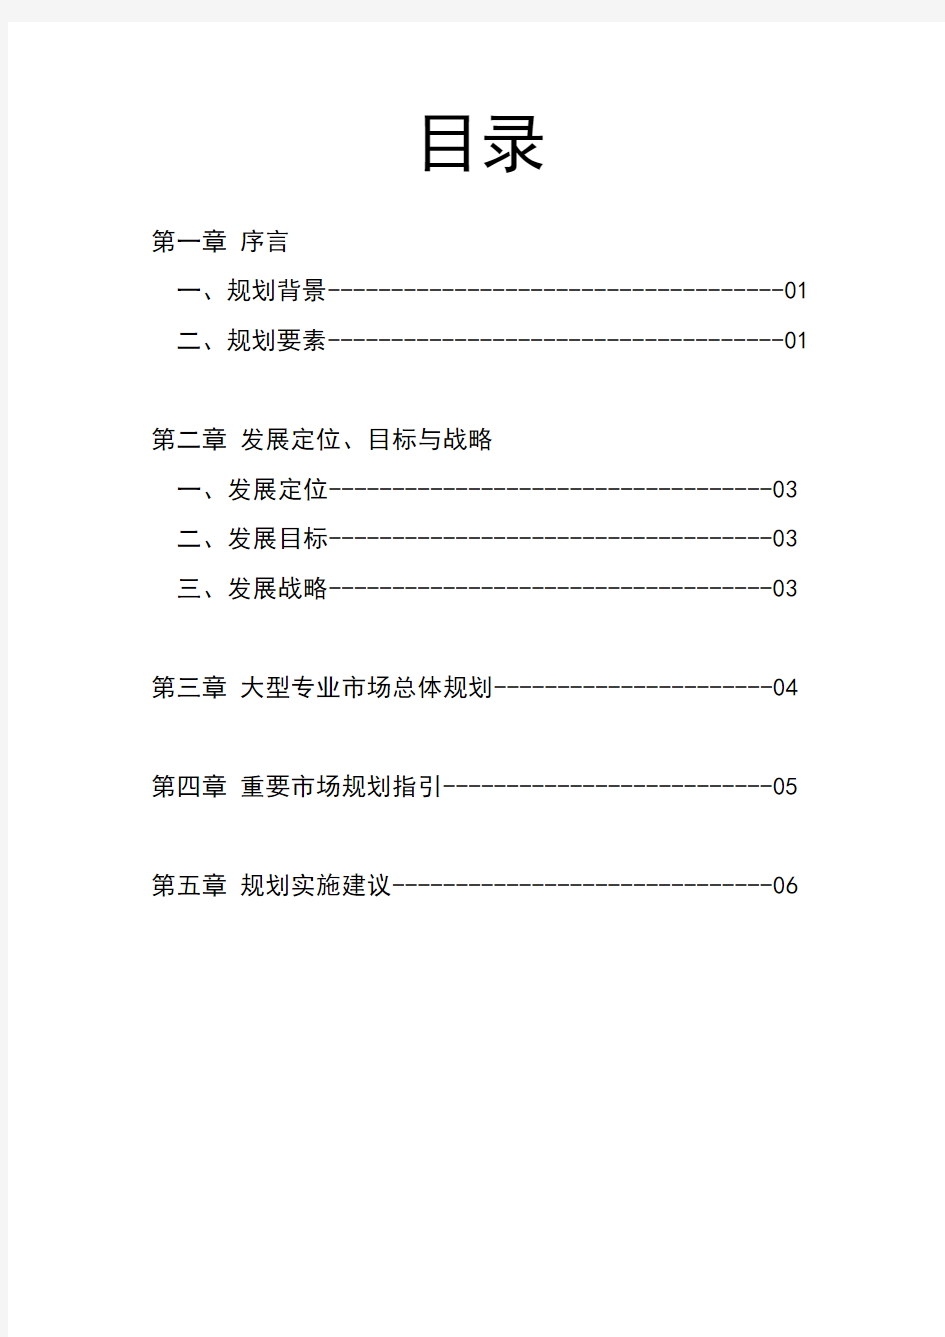 贵阳市大型专业市场总体规划(2014-2020)